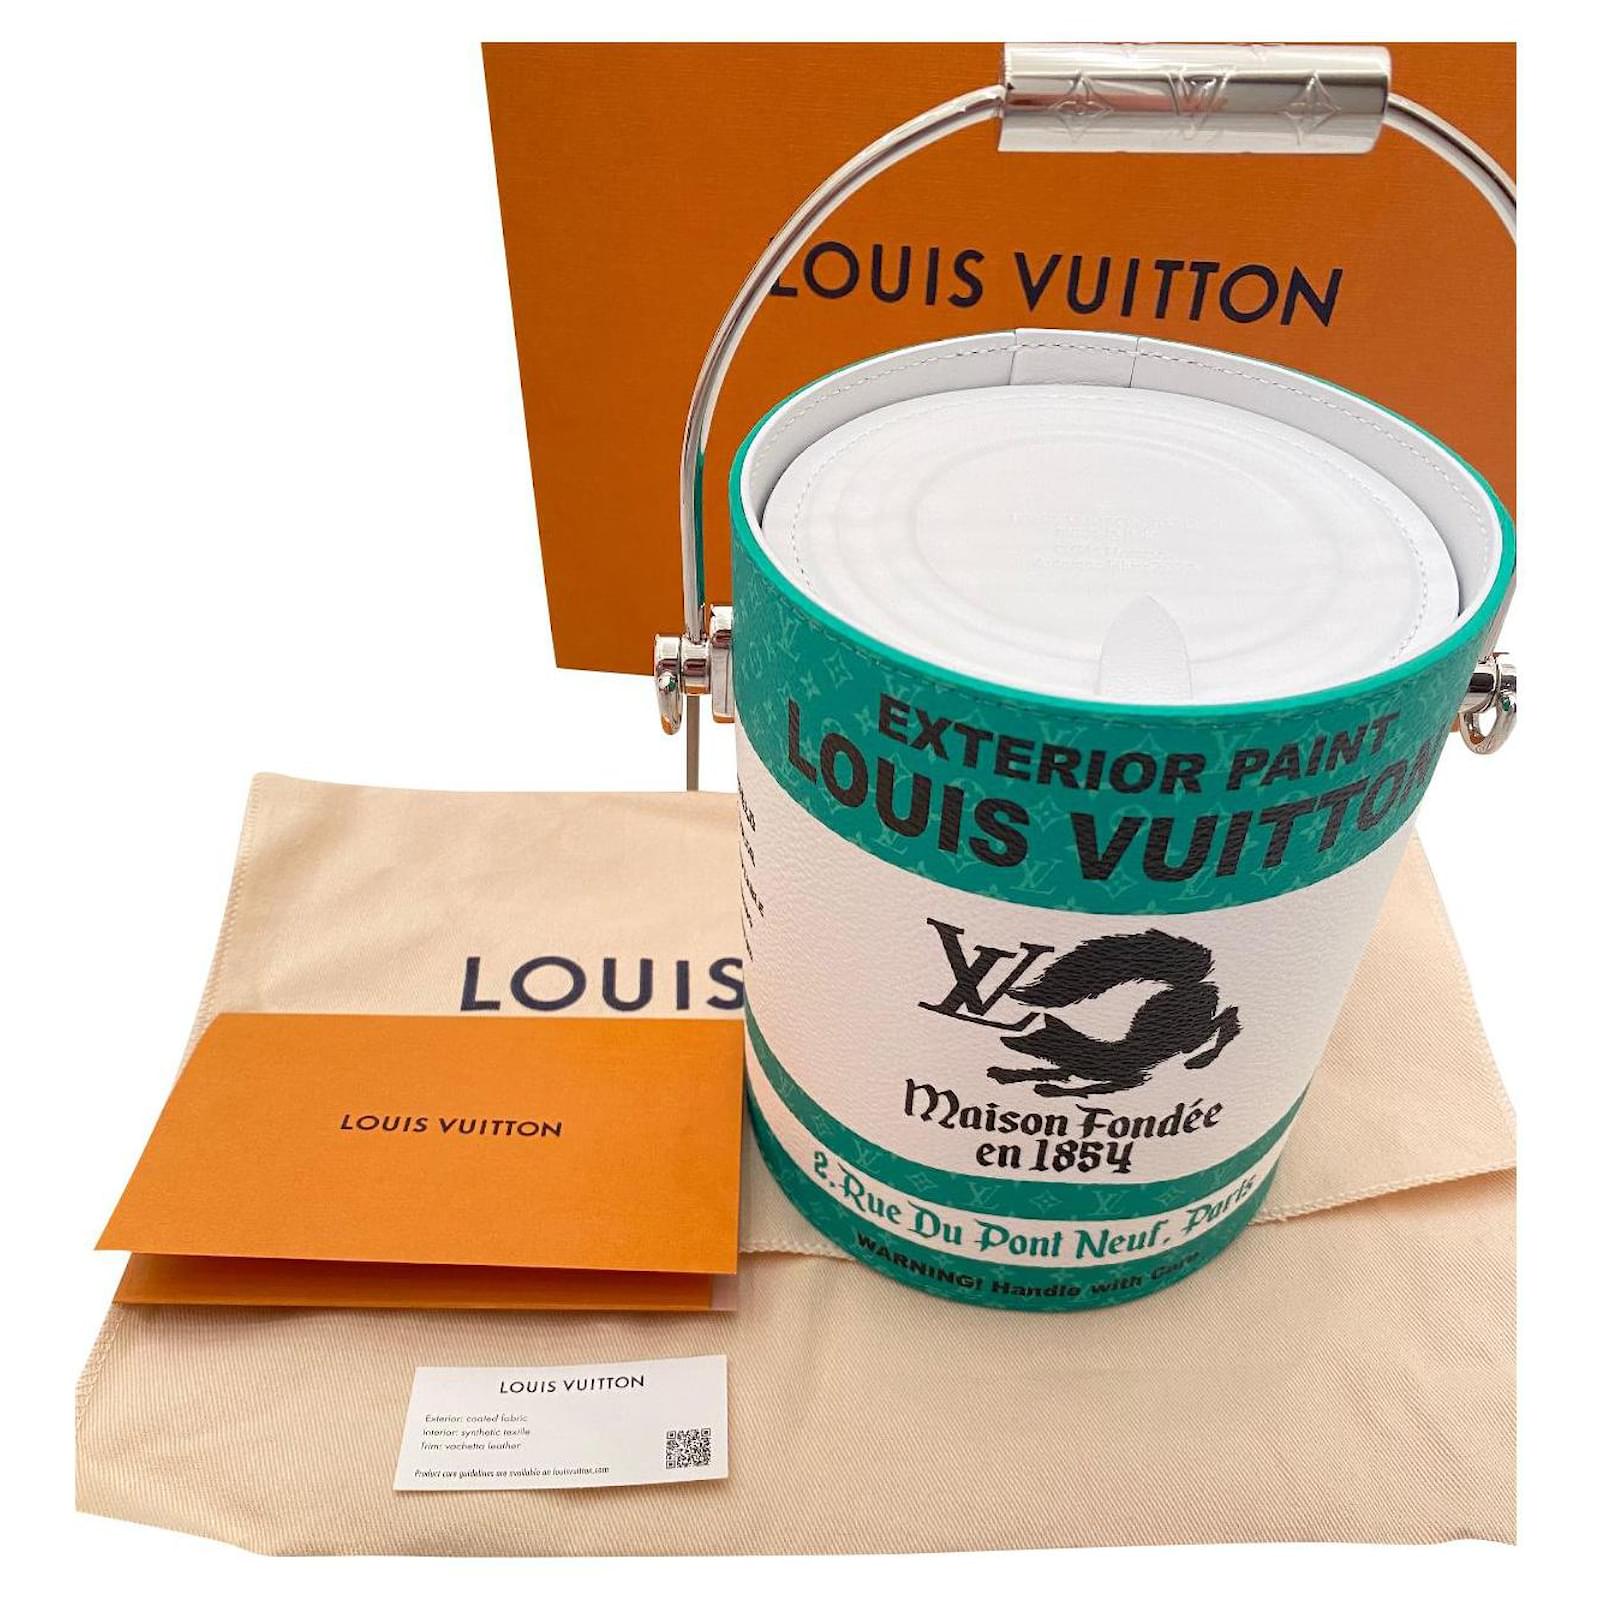 Louis Vuitton convierte sus carteras en latas de pintura y